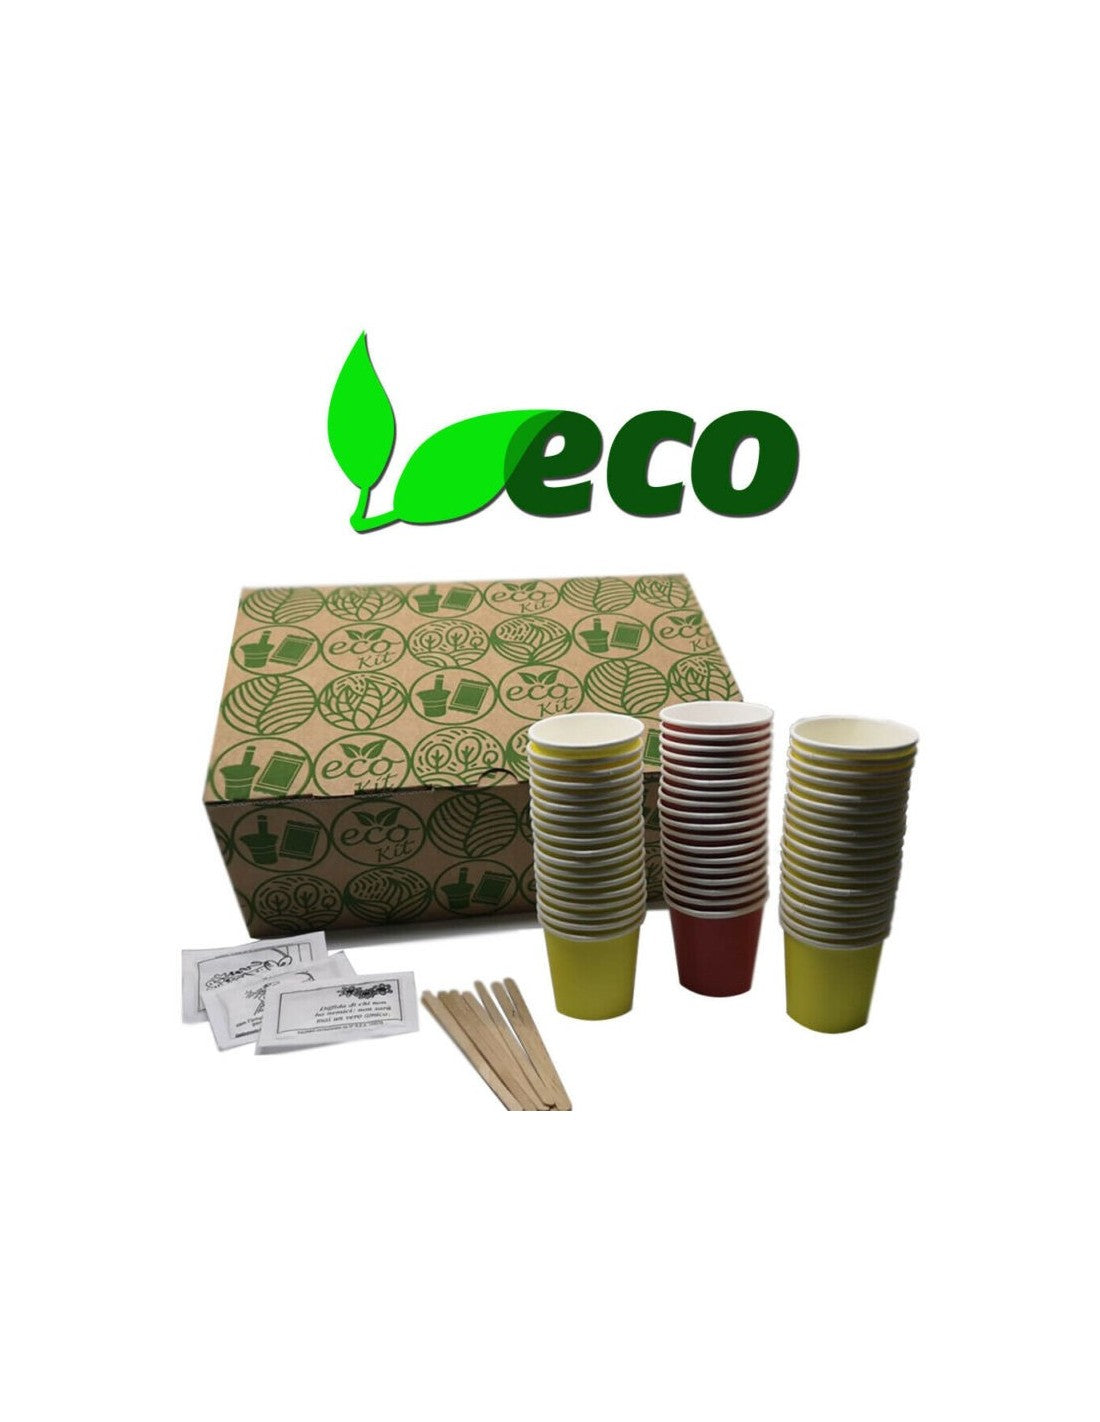 Accessori per caffè biodegradabili - palettine, zucchero e bicchierini